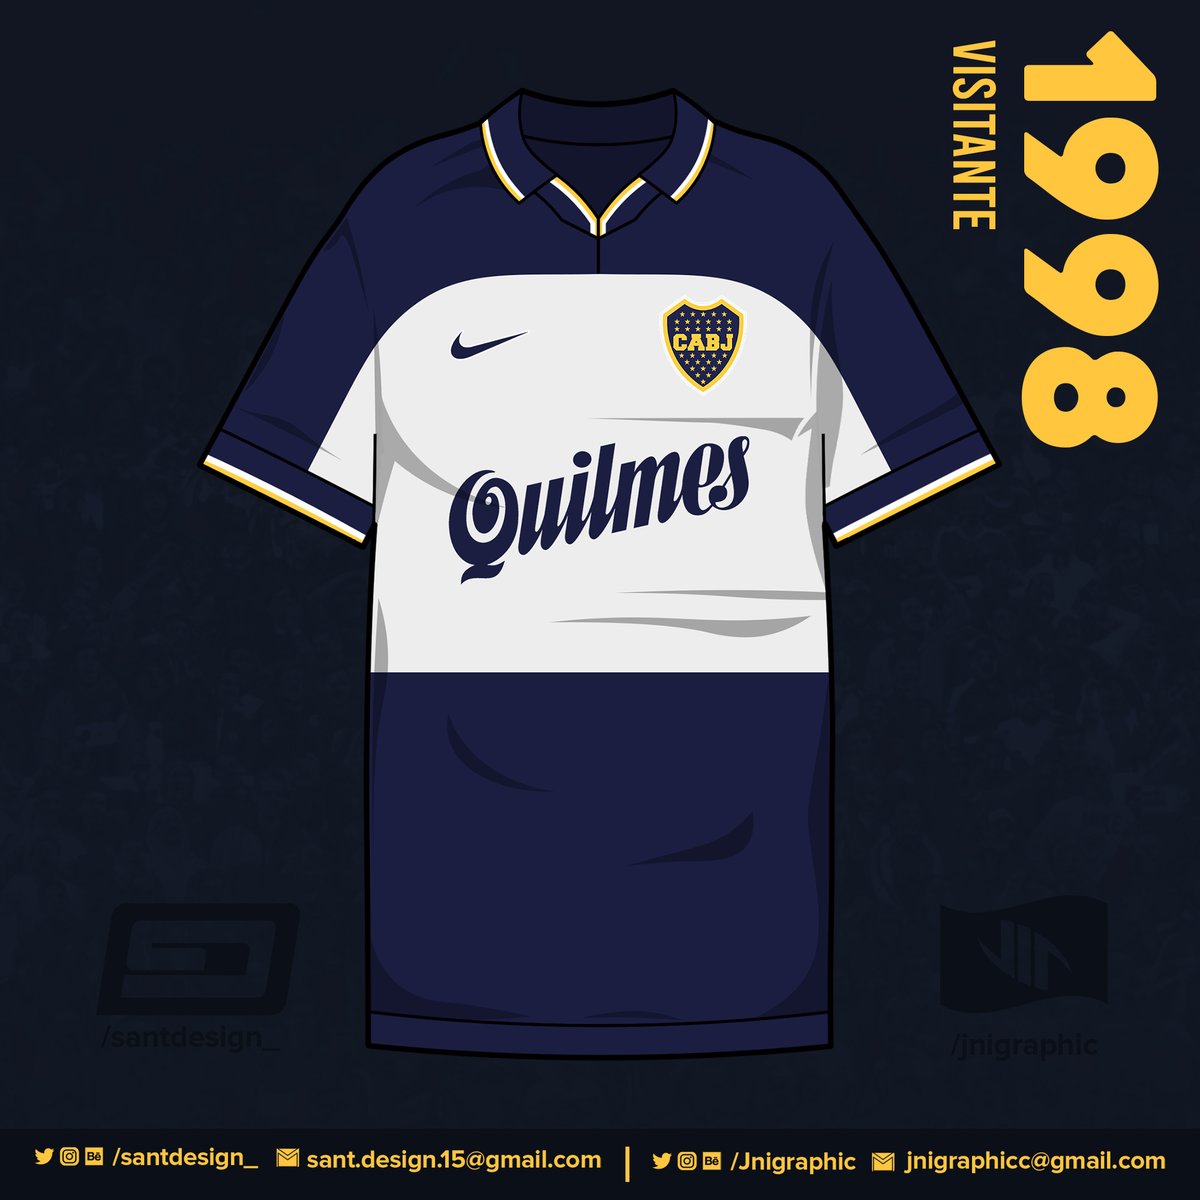 1998: Nuevos modelos en el club; con estos Boca gana el Apertura 98 y el Clausura 99.1999: Para la Copa Mercosur de este año, Nike presenta un modelo igual al de 1998 pero de color amarillo.